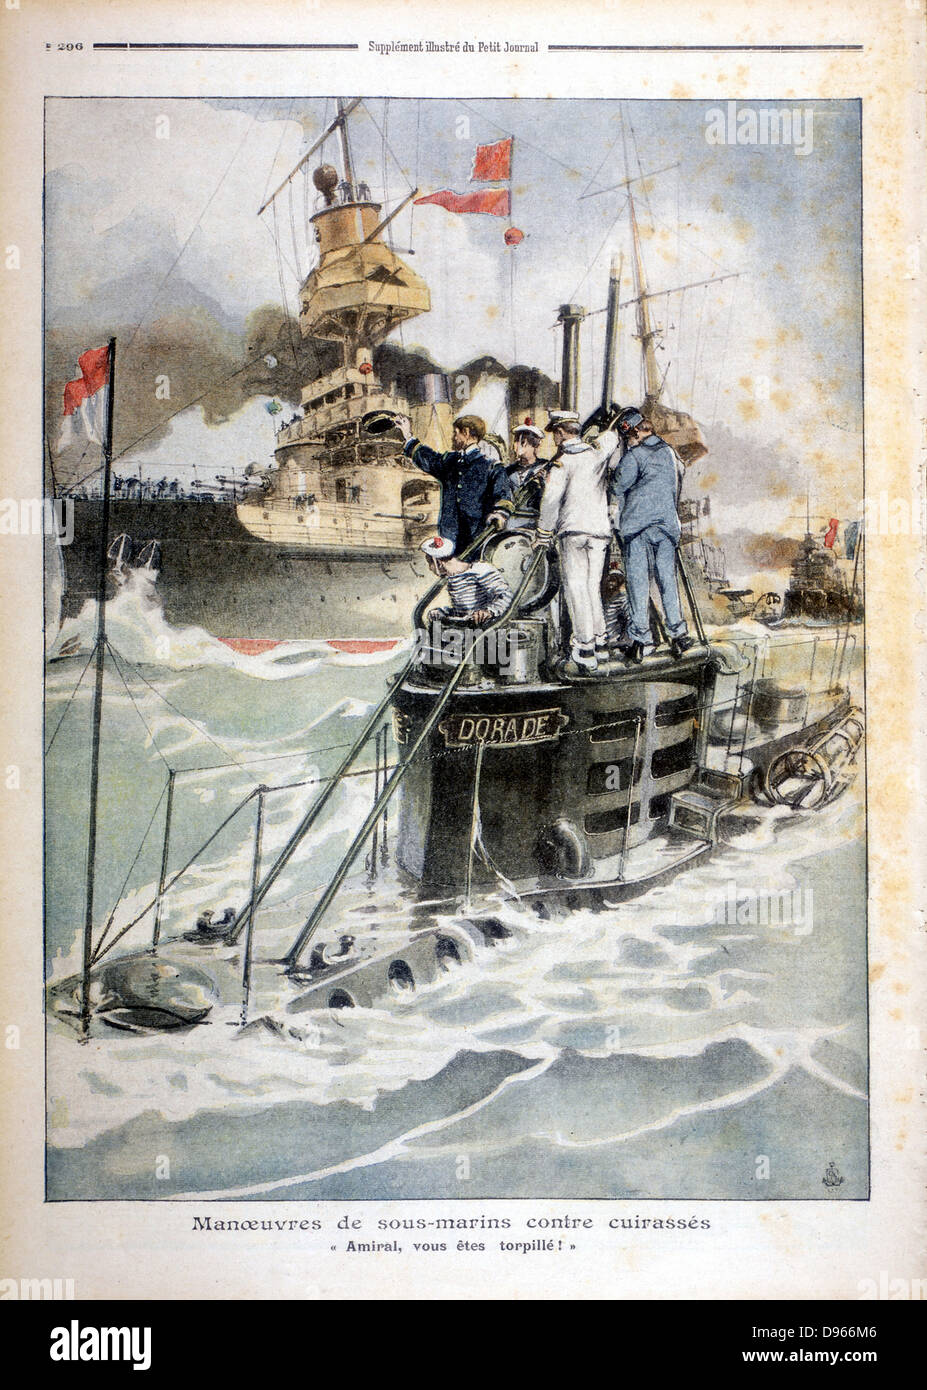 Exercices navals français sous-marin : 'Dorade' surfacing de dire à un cuirassé qu'il a été 'sunk'. Illustration de 'Le Petit Journal', Paris, 1908. Banque D'Images